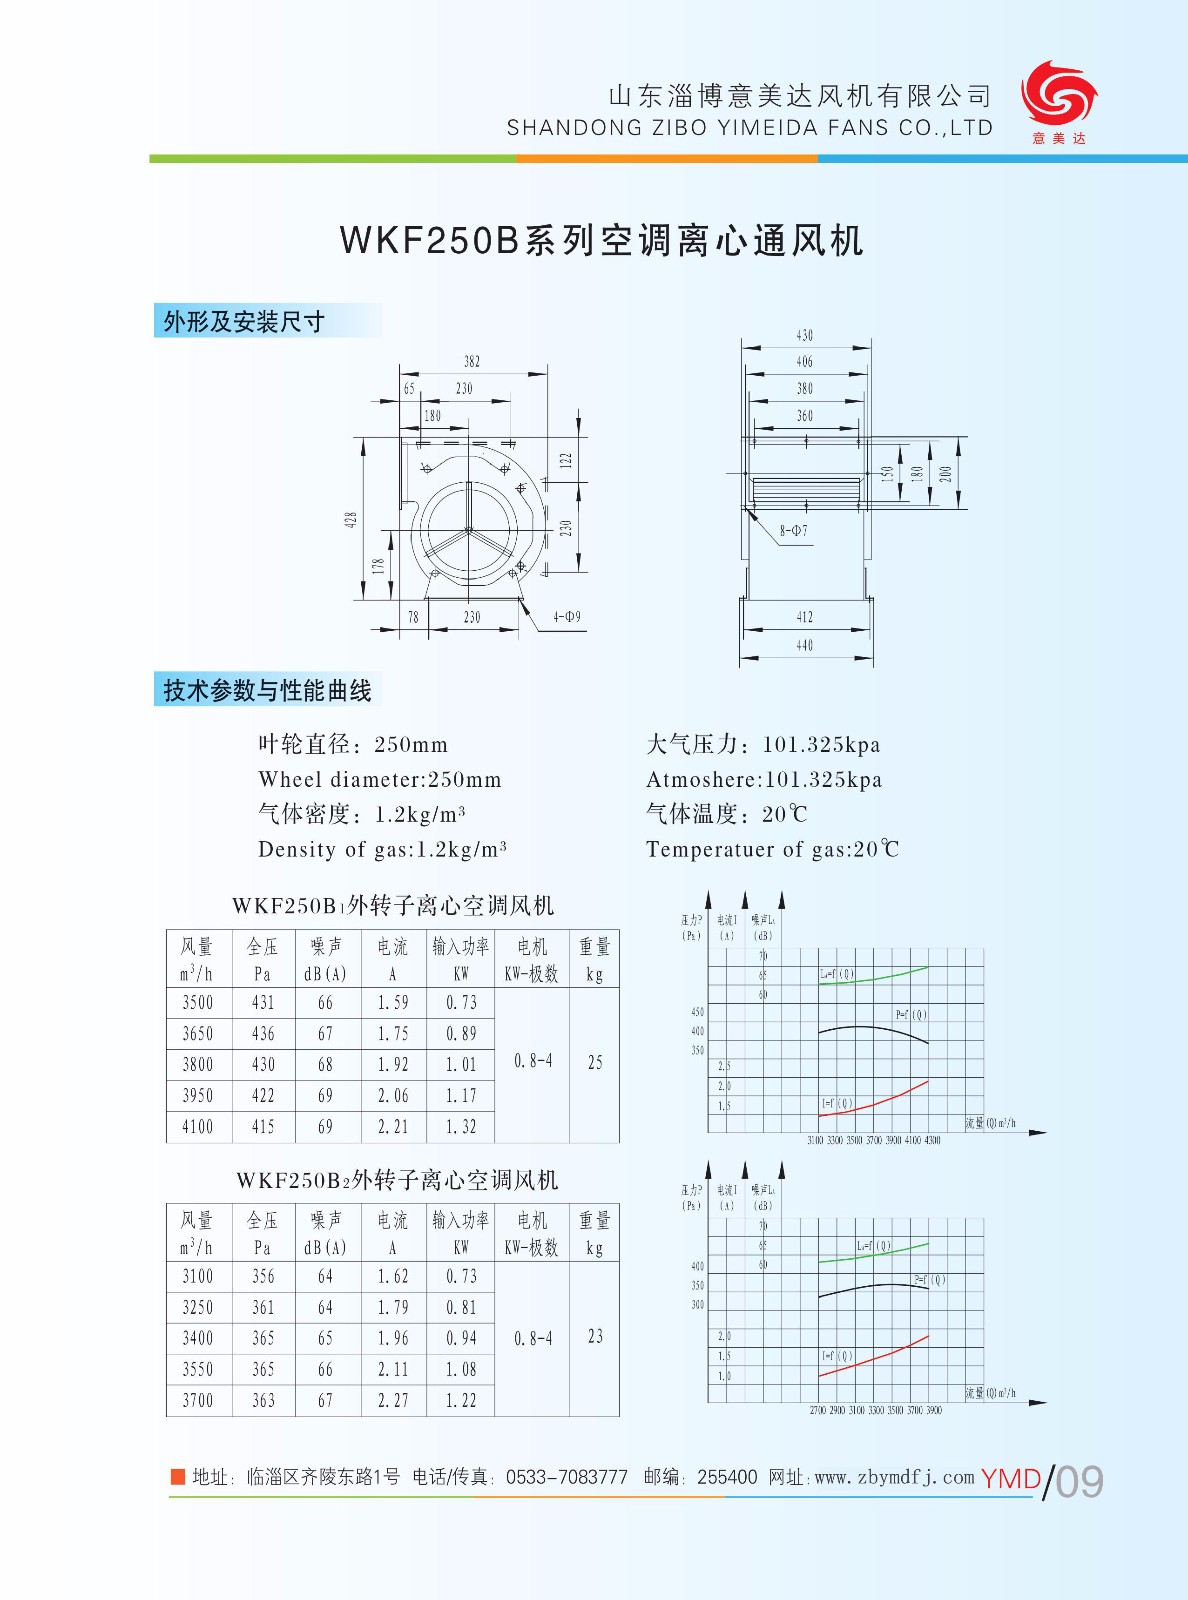 WKF250B4|WKF250B-山东淄博意美达风机有限公司